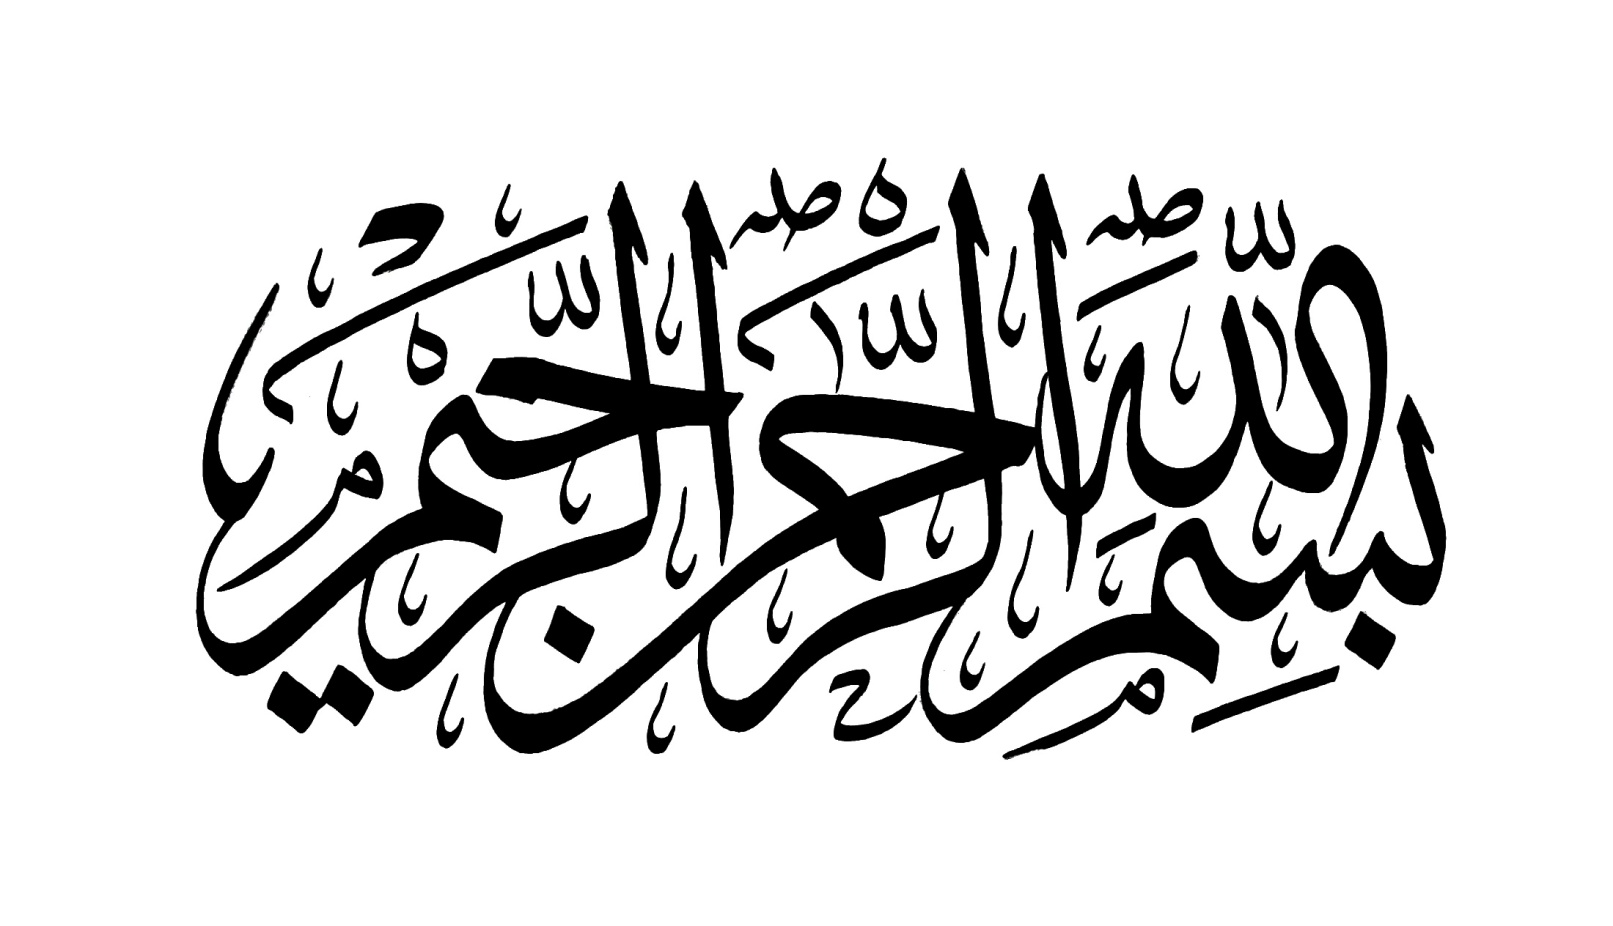 الخطوط الإسلامية مجانا بسملة (شكل بيضوي)